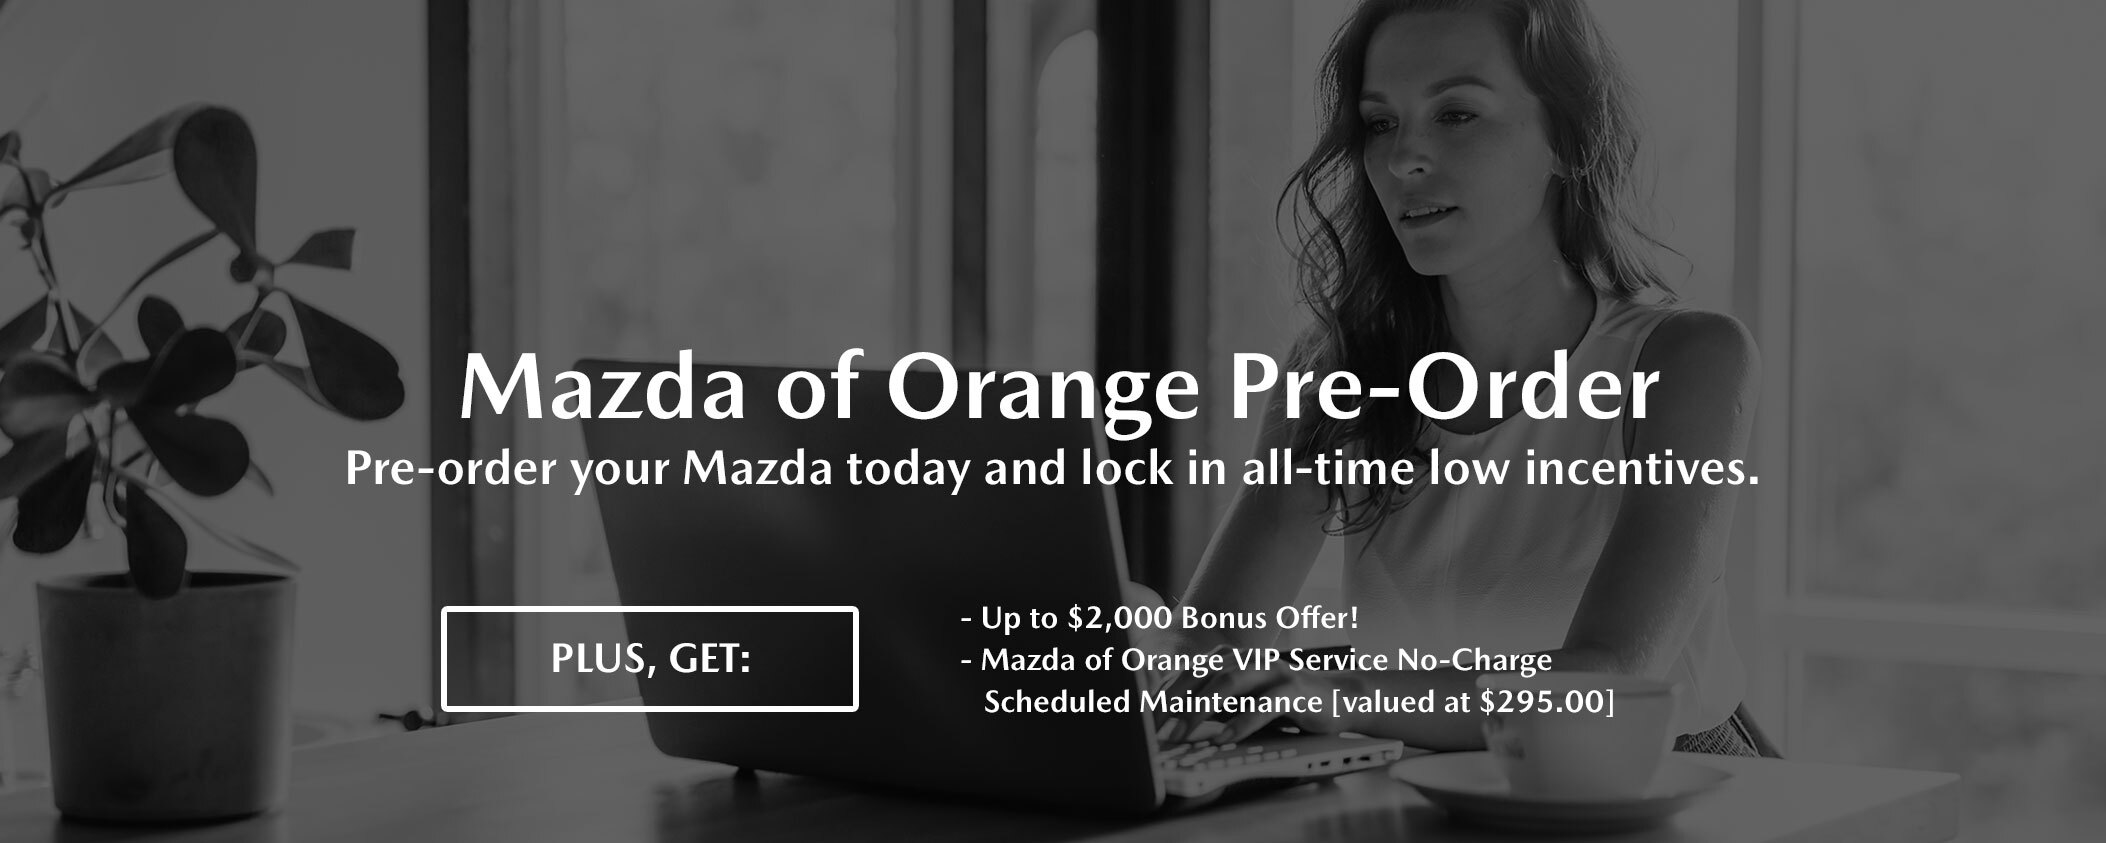 Mazda of Orange Pre-Order